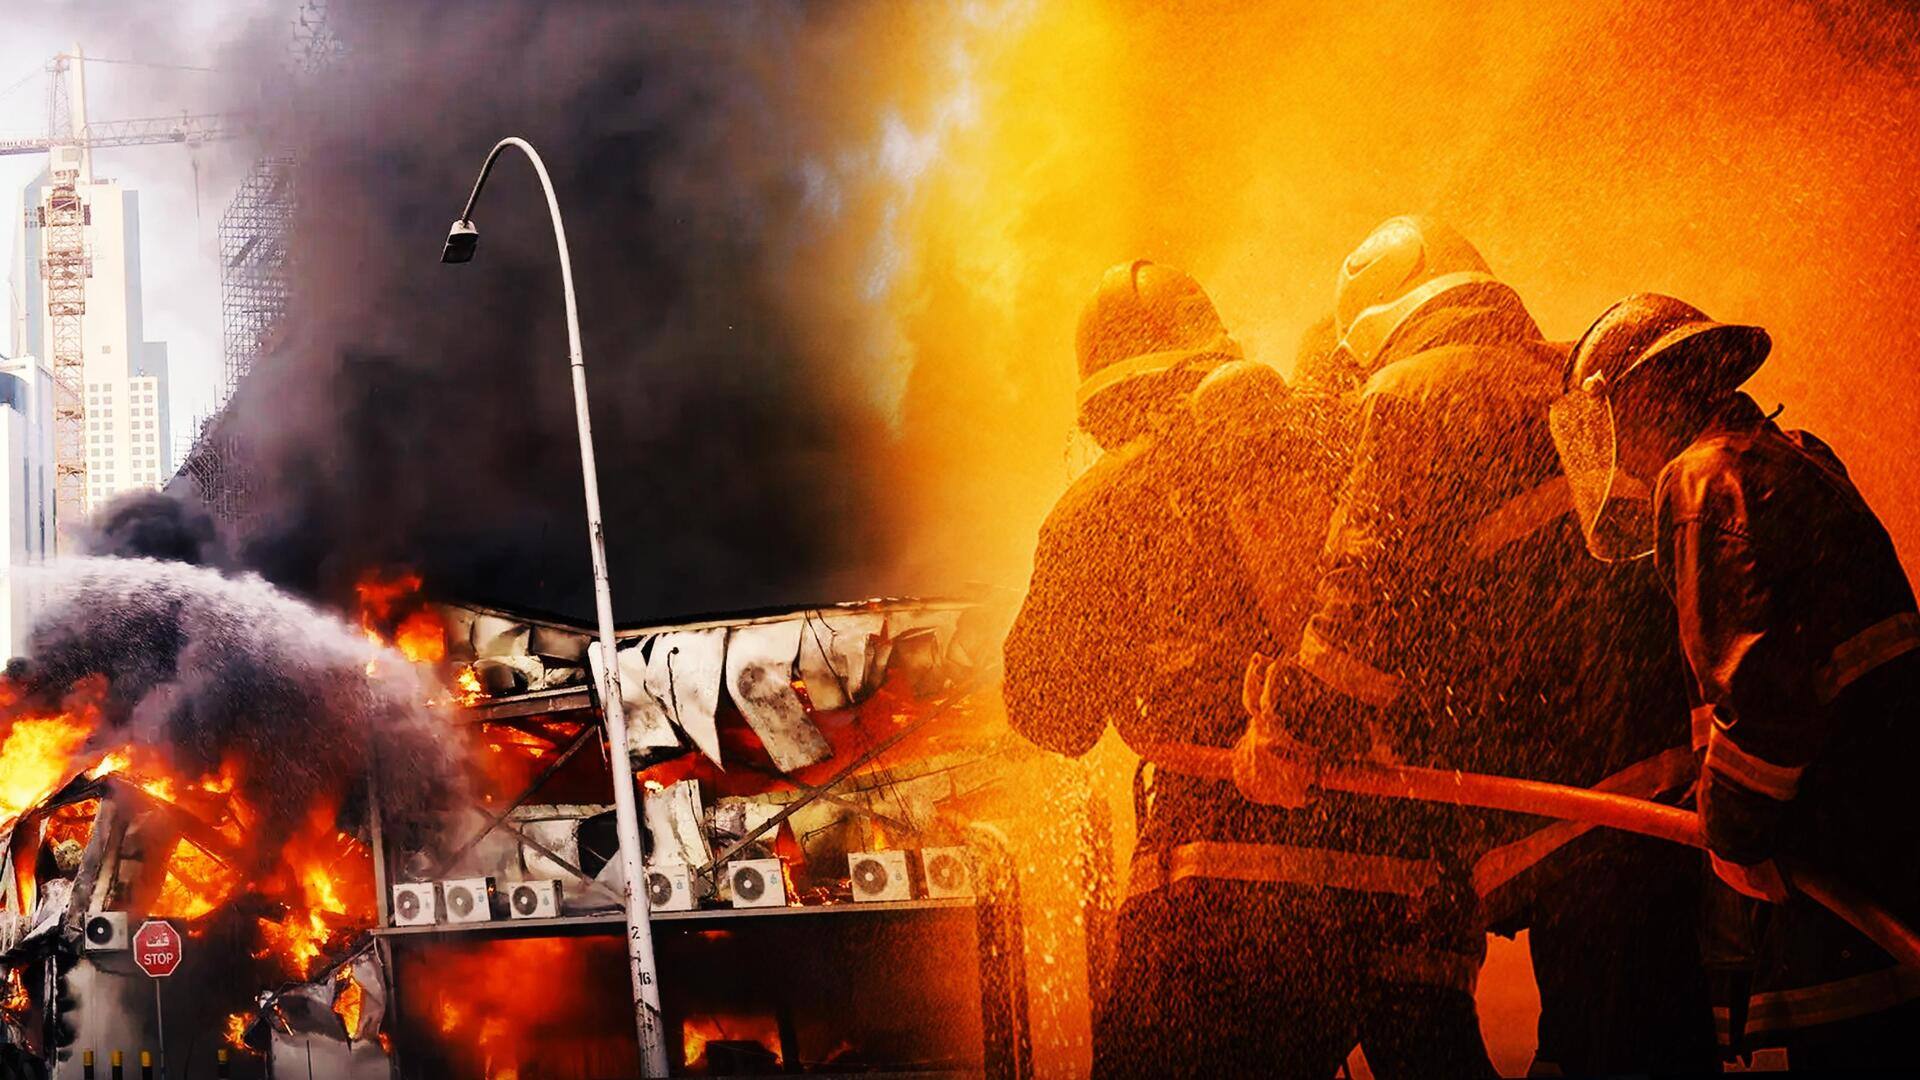 कुवैत: इमारत में भीषण आग लगने से 41 लोगों की मौत, अधिकतर भारतीय